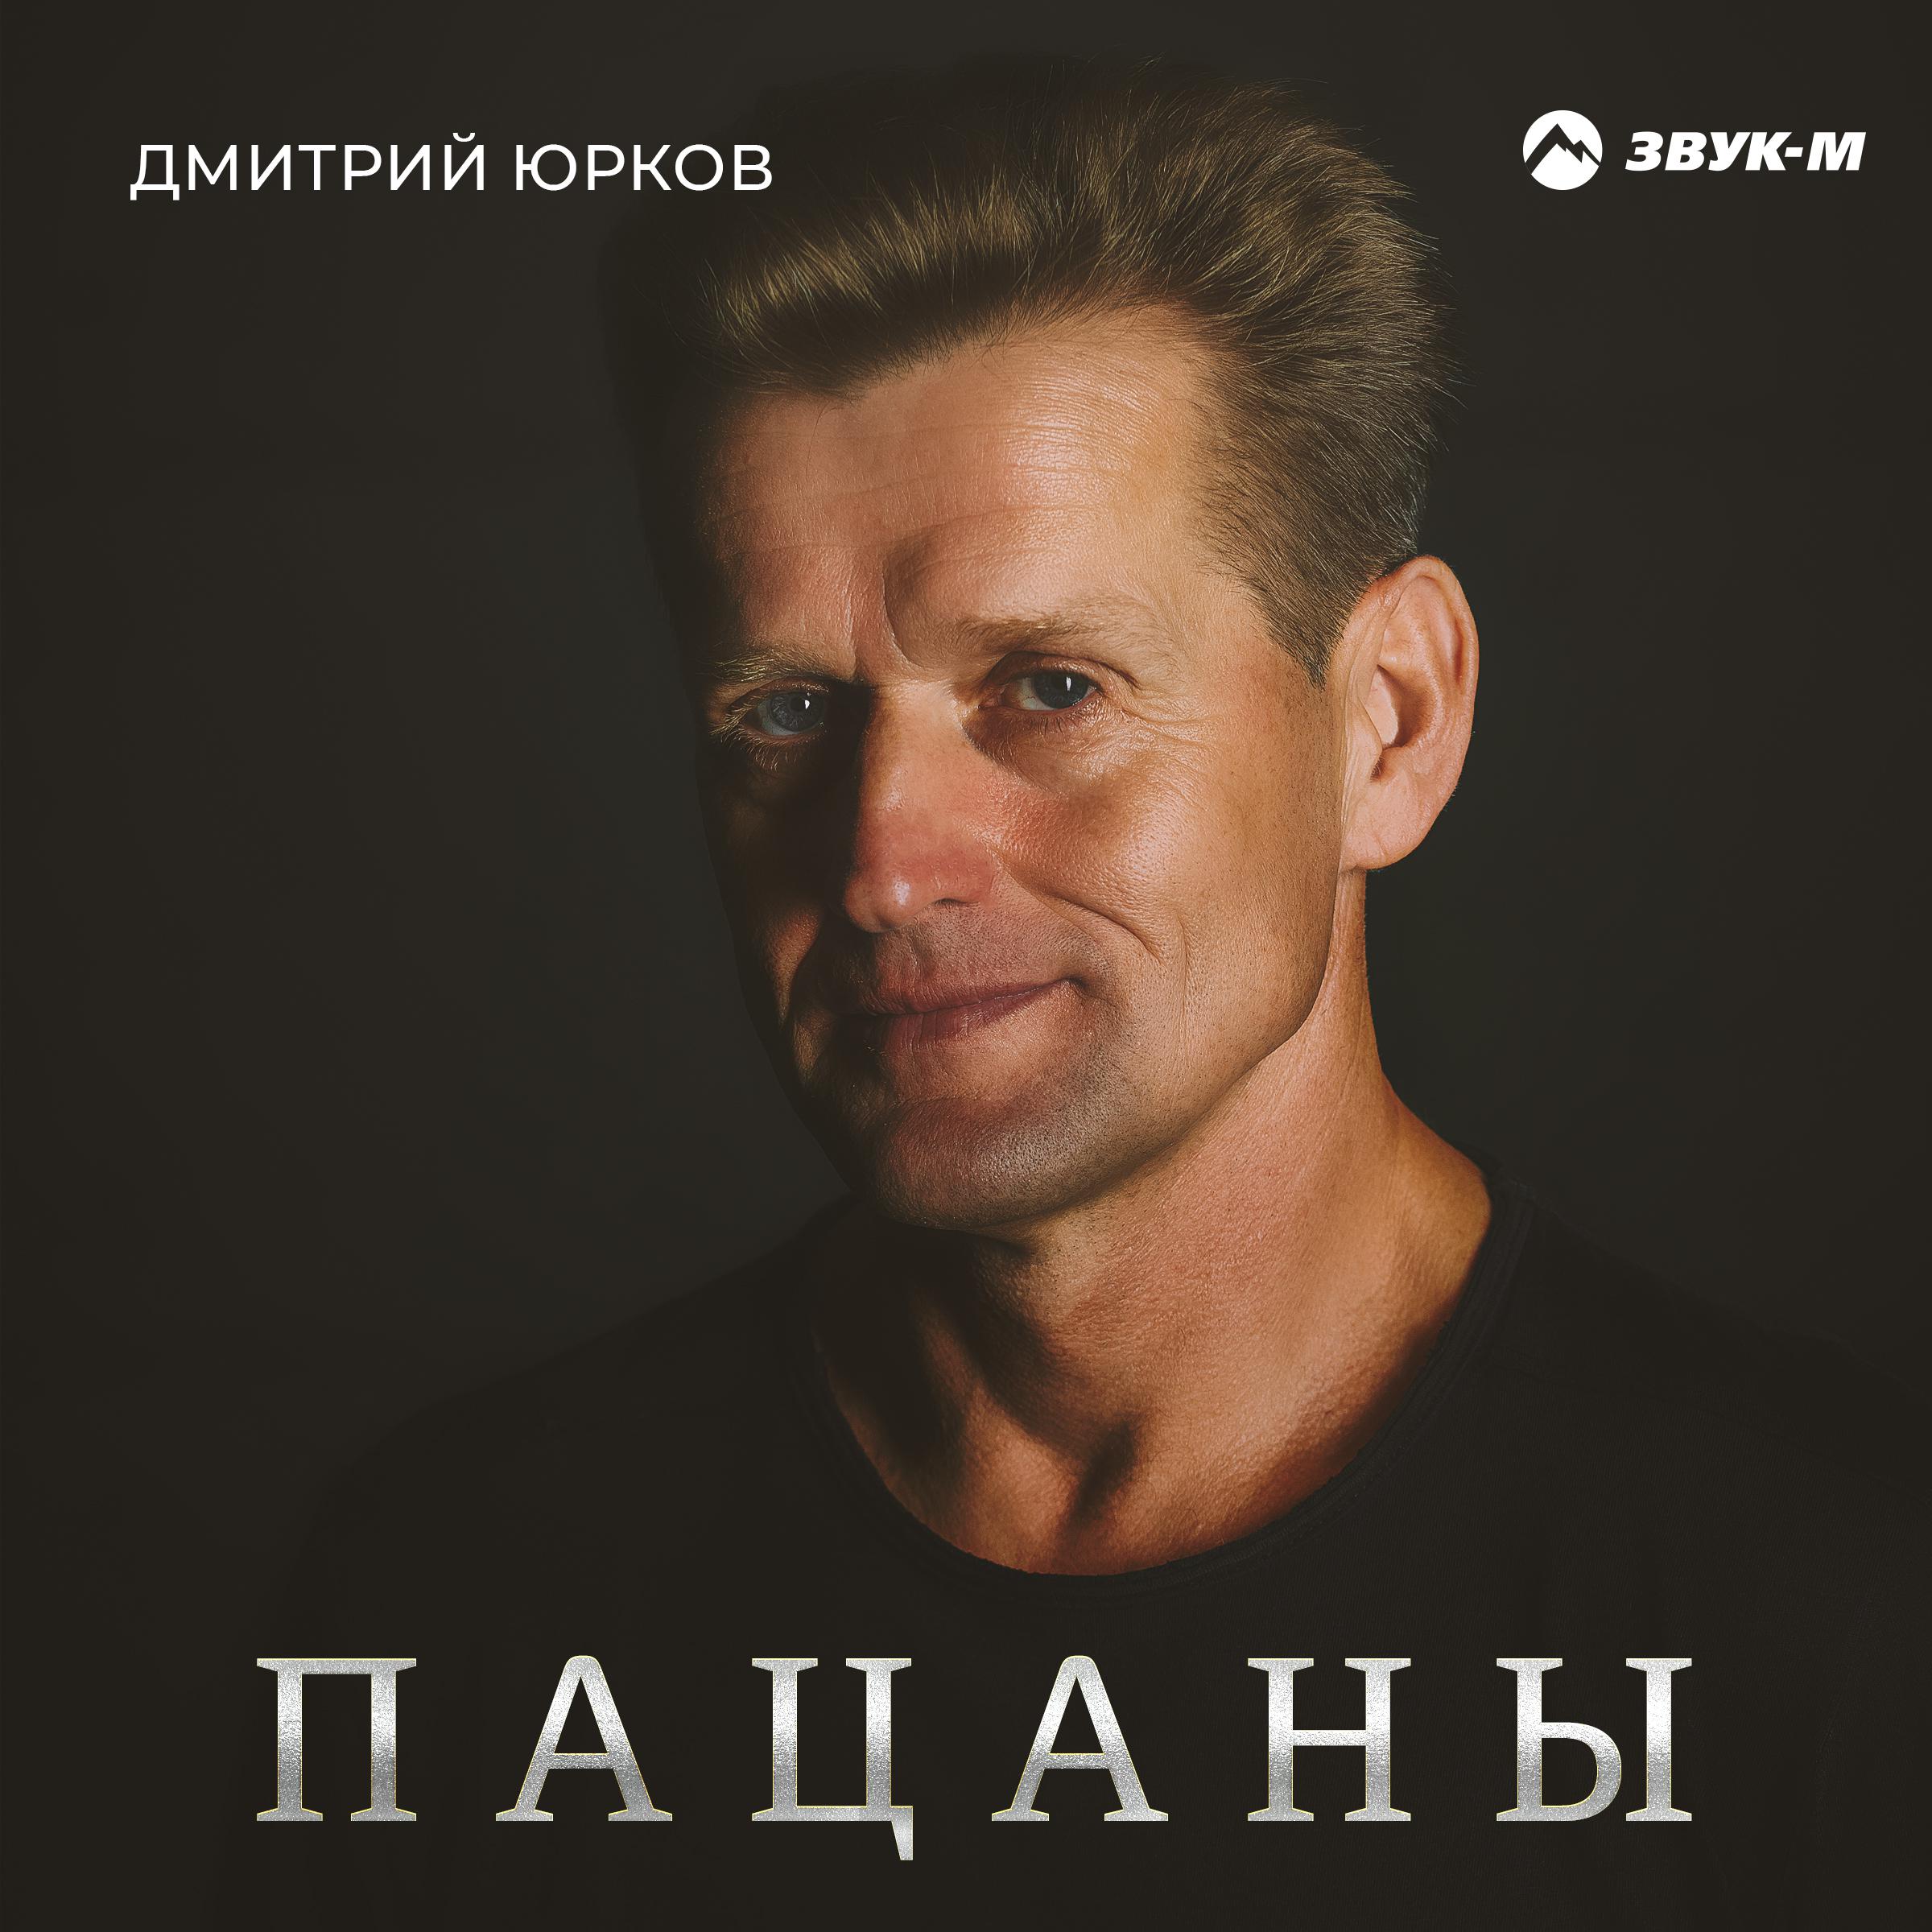 Дмитрий Юрков все песни в mp3